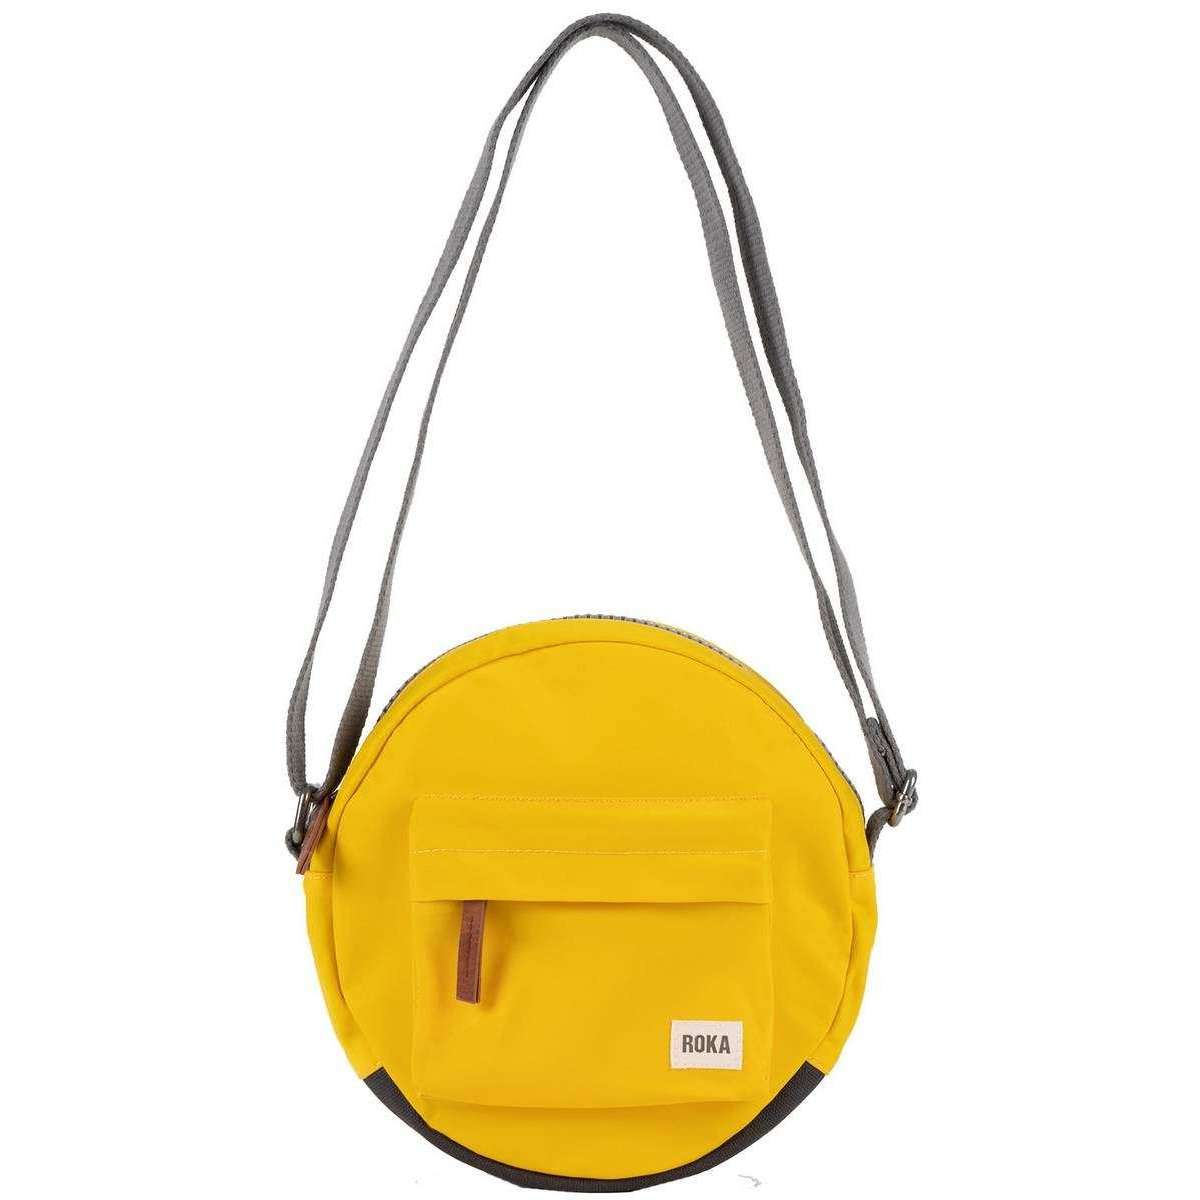 Roka Paddington B Small Sustainable Nylon Crossbody Bag - Aspen Yellow